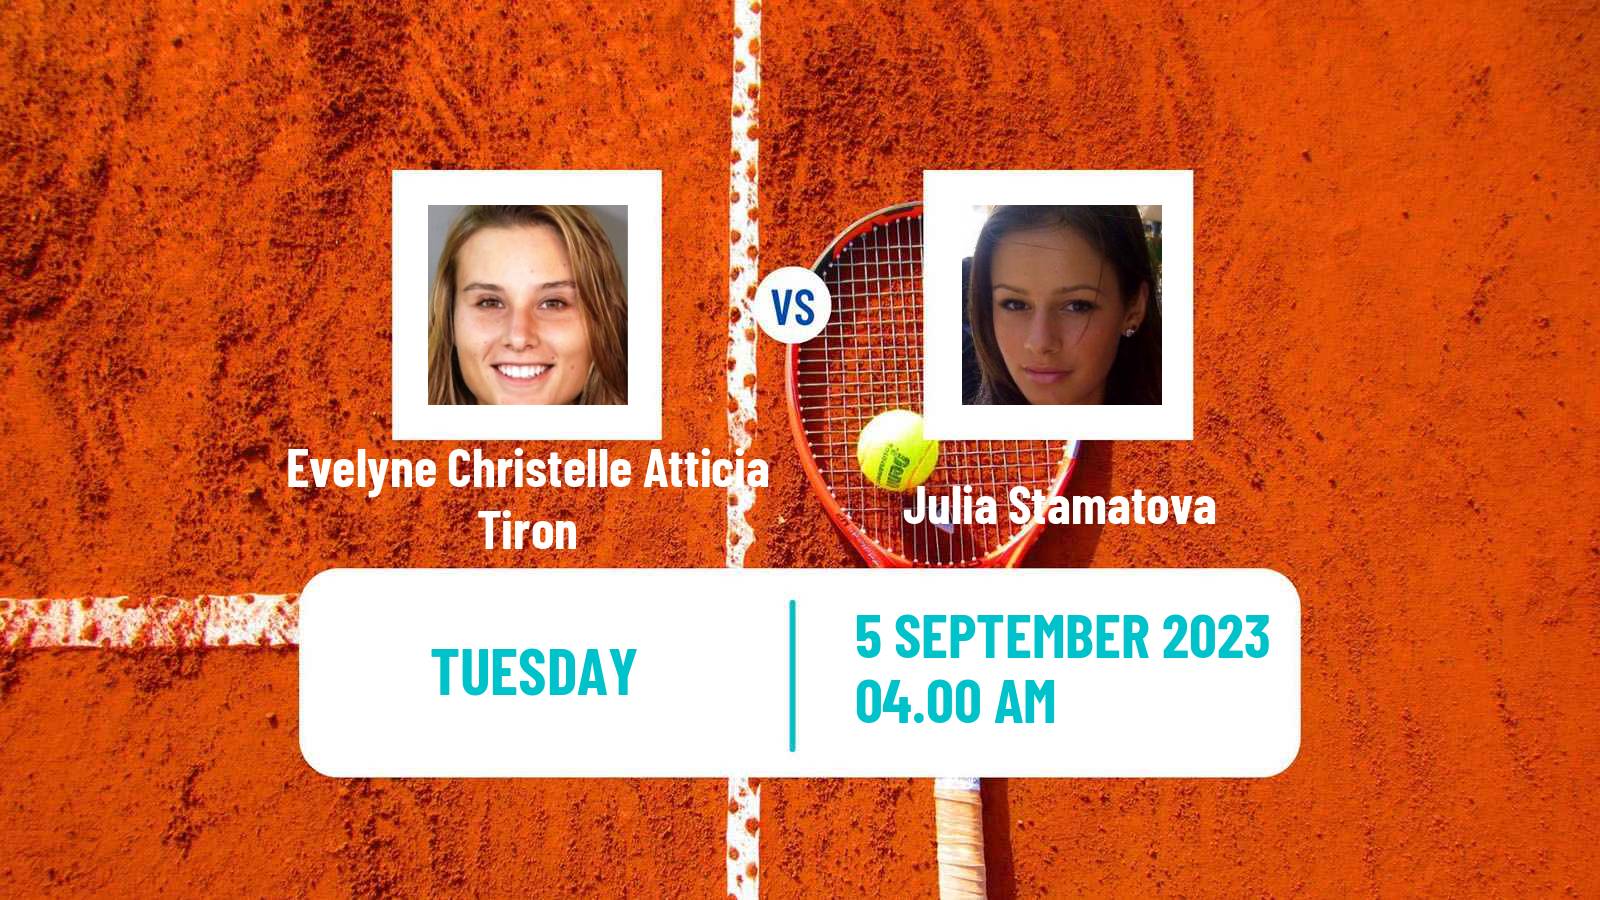 Tennis ITF W15 Buzau Women Evelyne Christelle Atticia Tiron - Julia Stamatova